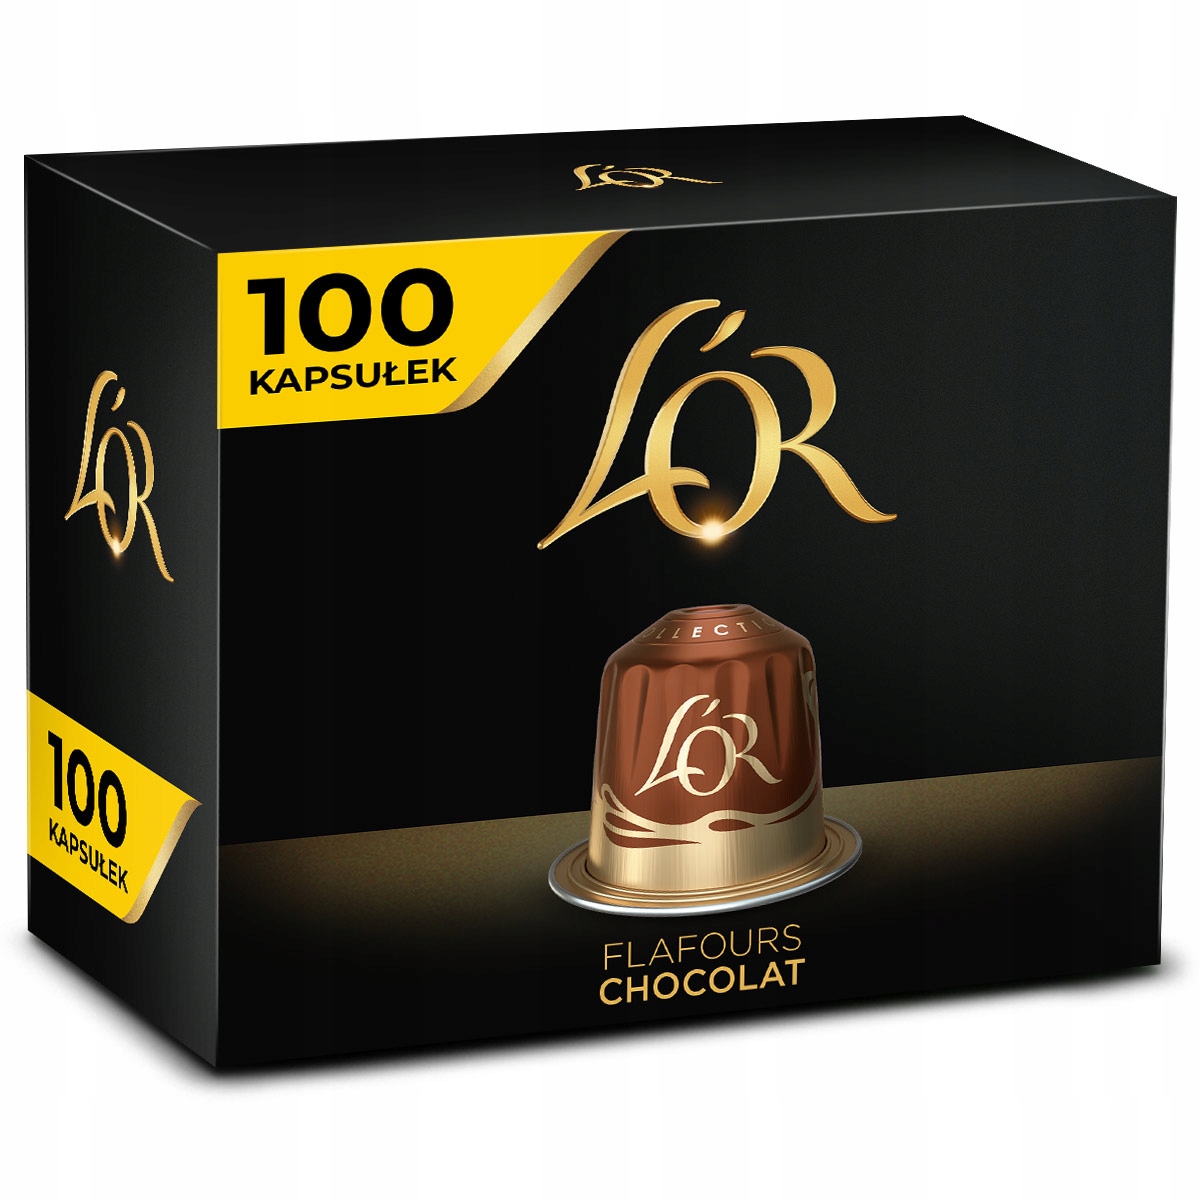 Kapsułki L'OR do Nespresso(r)* Chocolat 100 szt. 13751313623